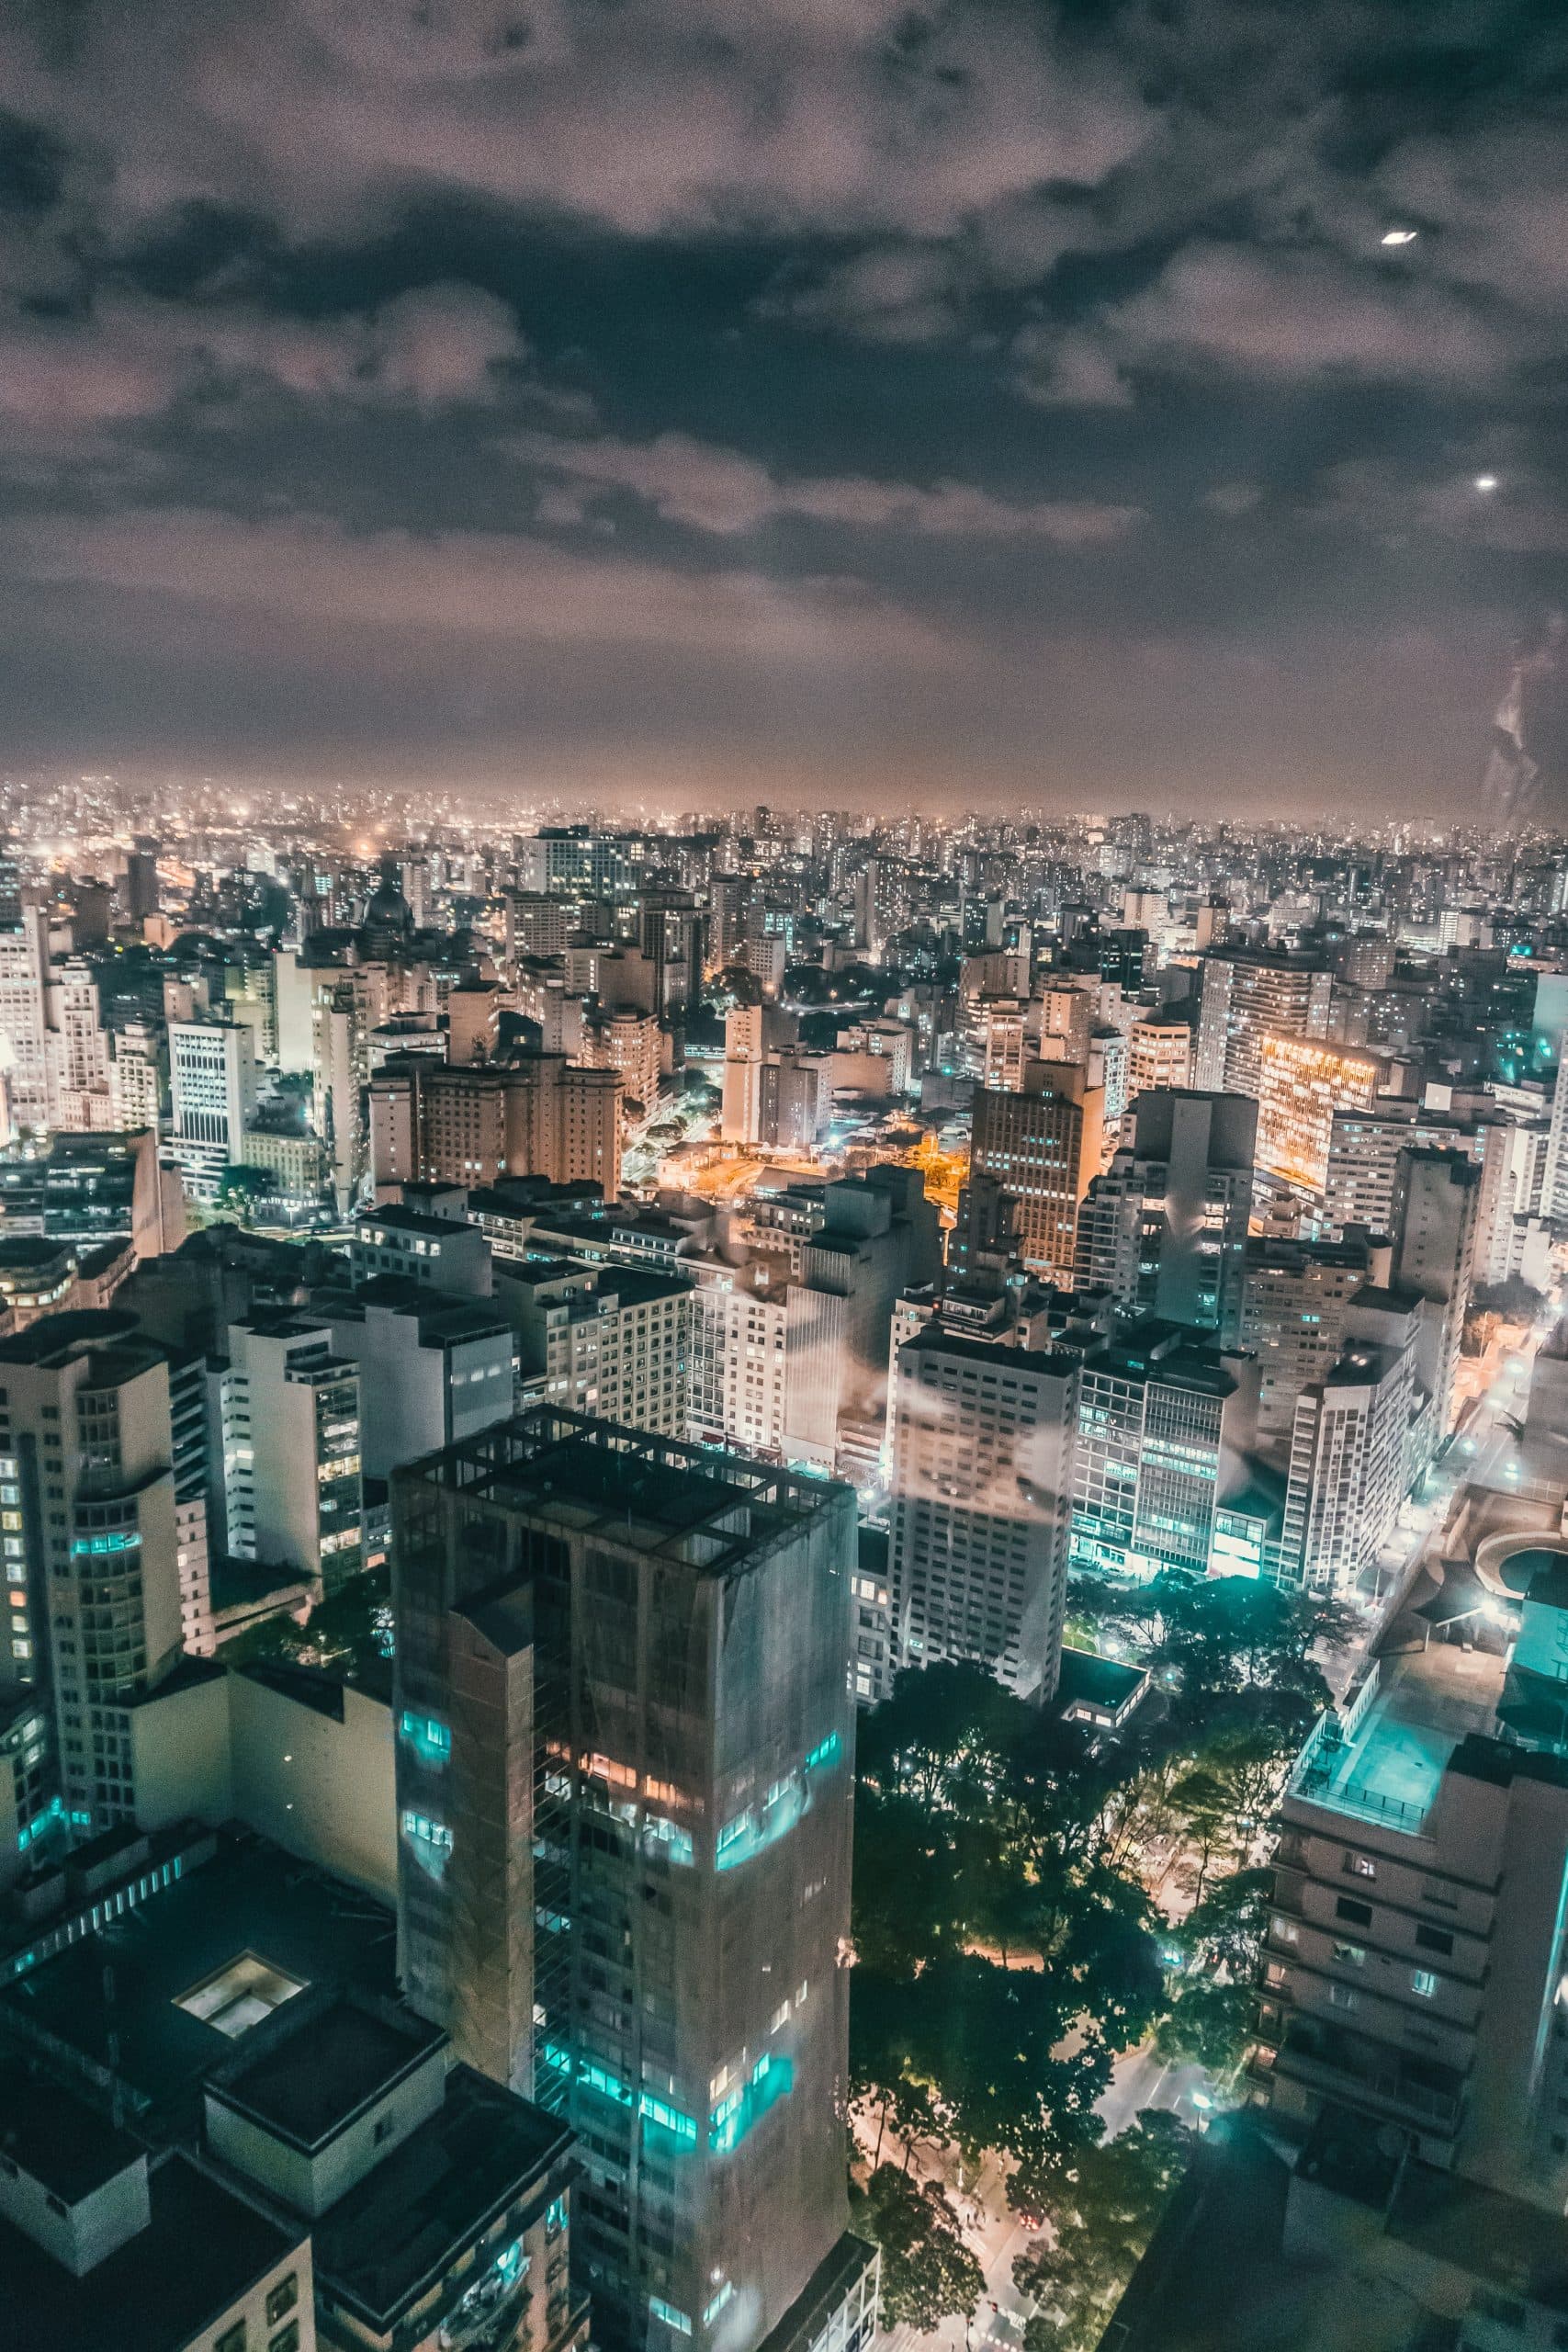 Foto di Kaique Rocha: https://www.pexels.com/it-it/foto/fotografia-aerea-del-grattacielo-434194/